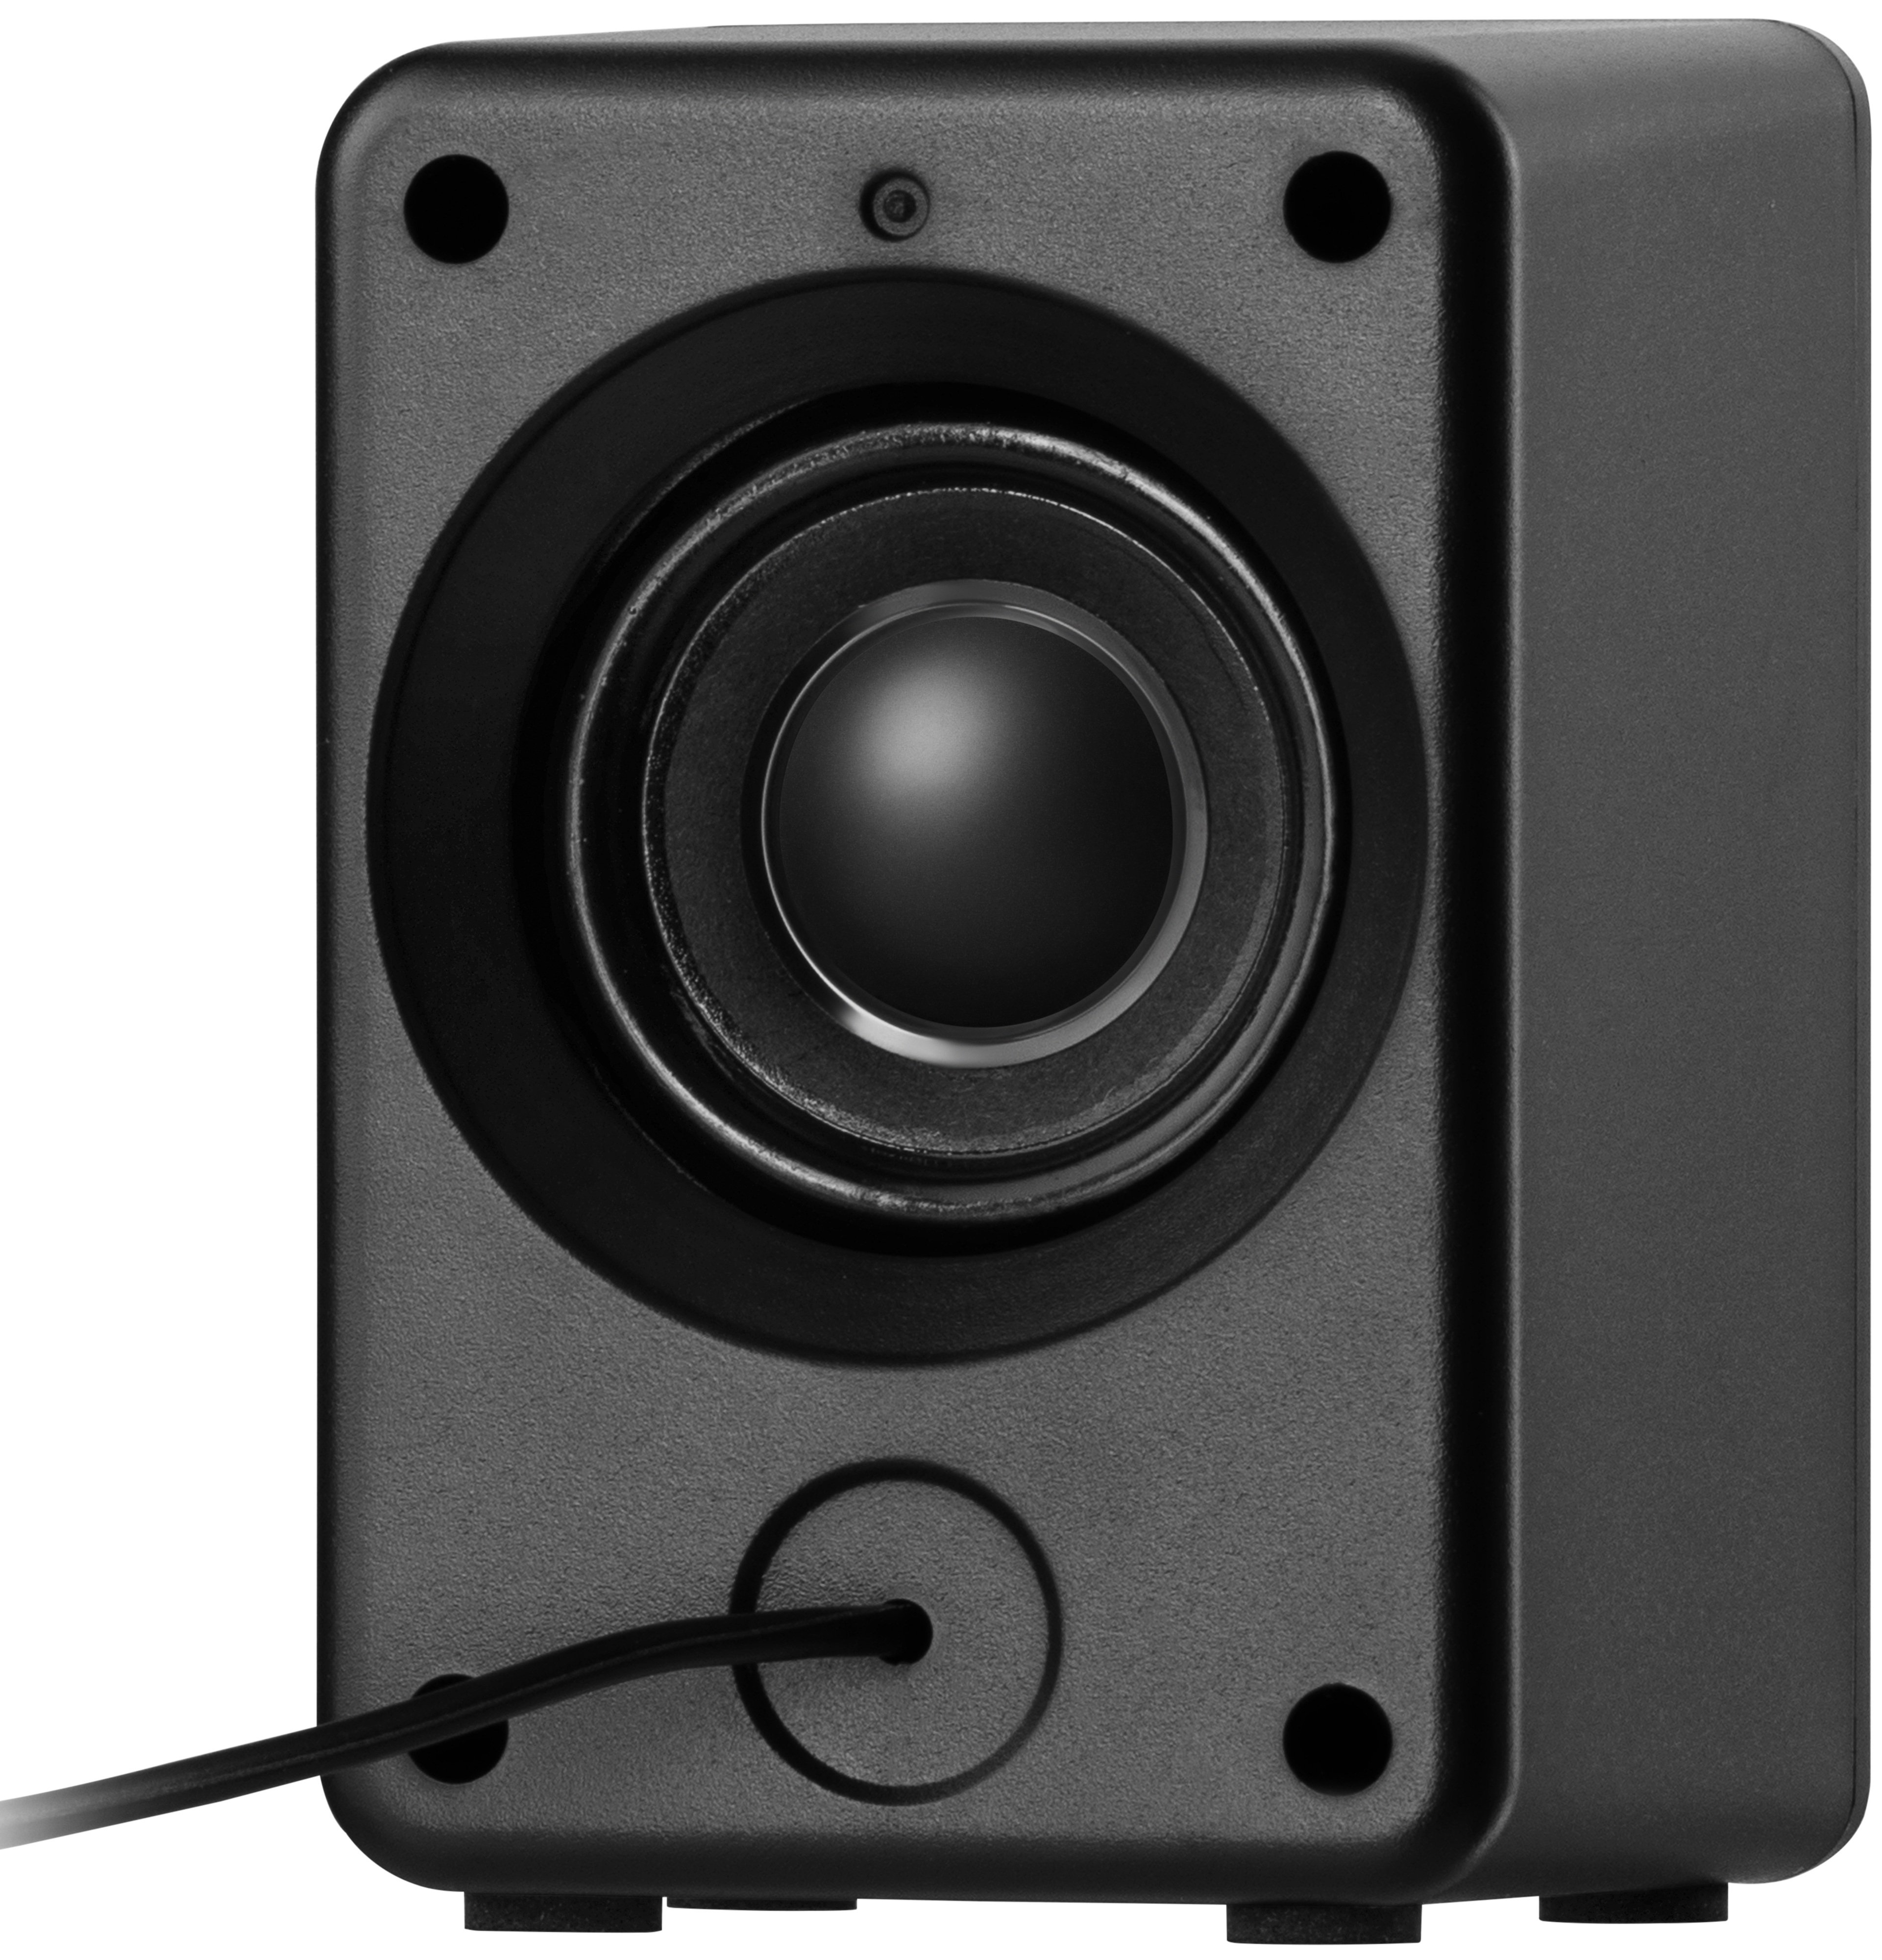 Колонки 2E Gaming Speakers SG300 2.0 RGB - зображення 4